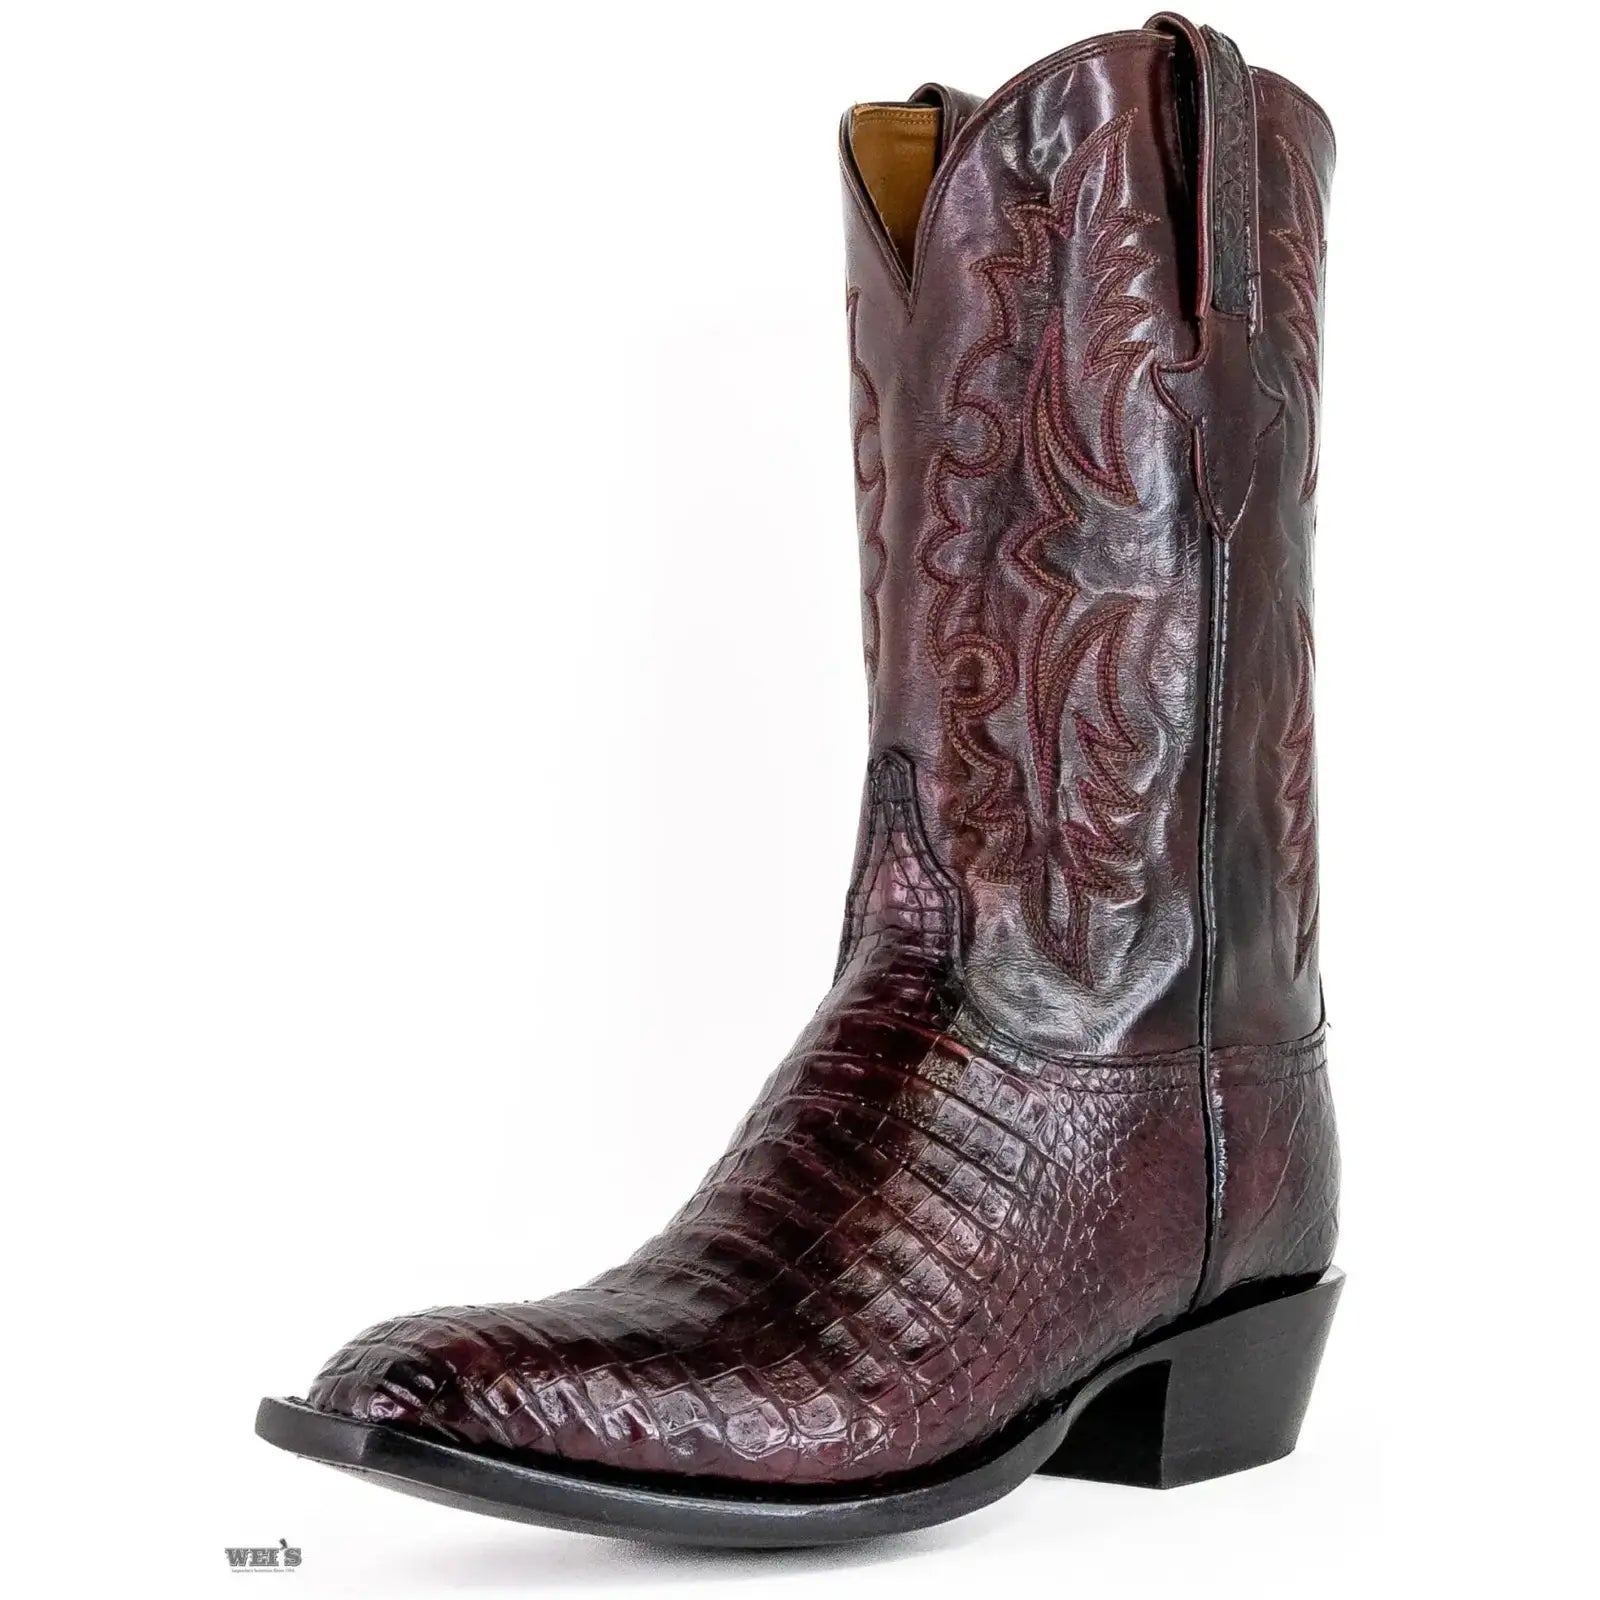 Lucchese Cowboy Boots 14" Exotic Caiman/Buffalo E2114.13